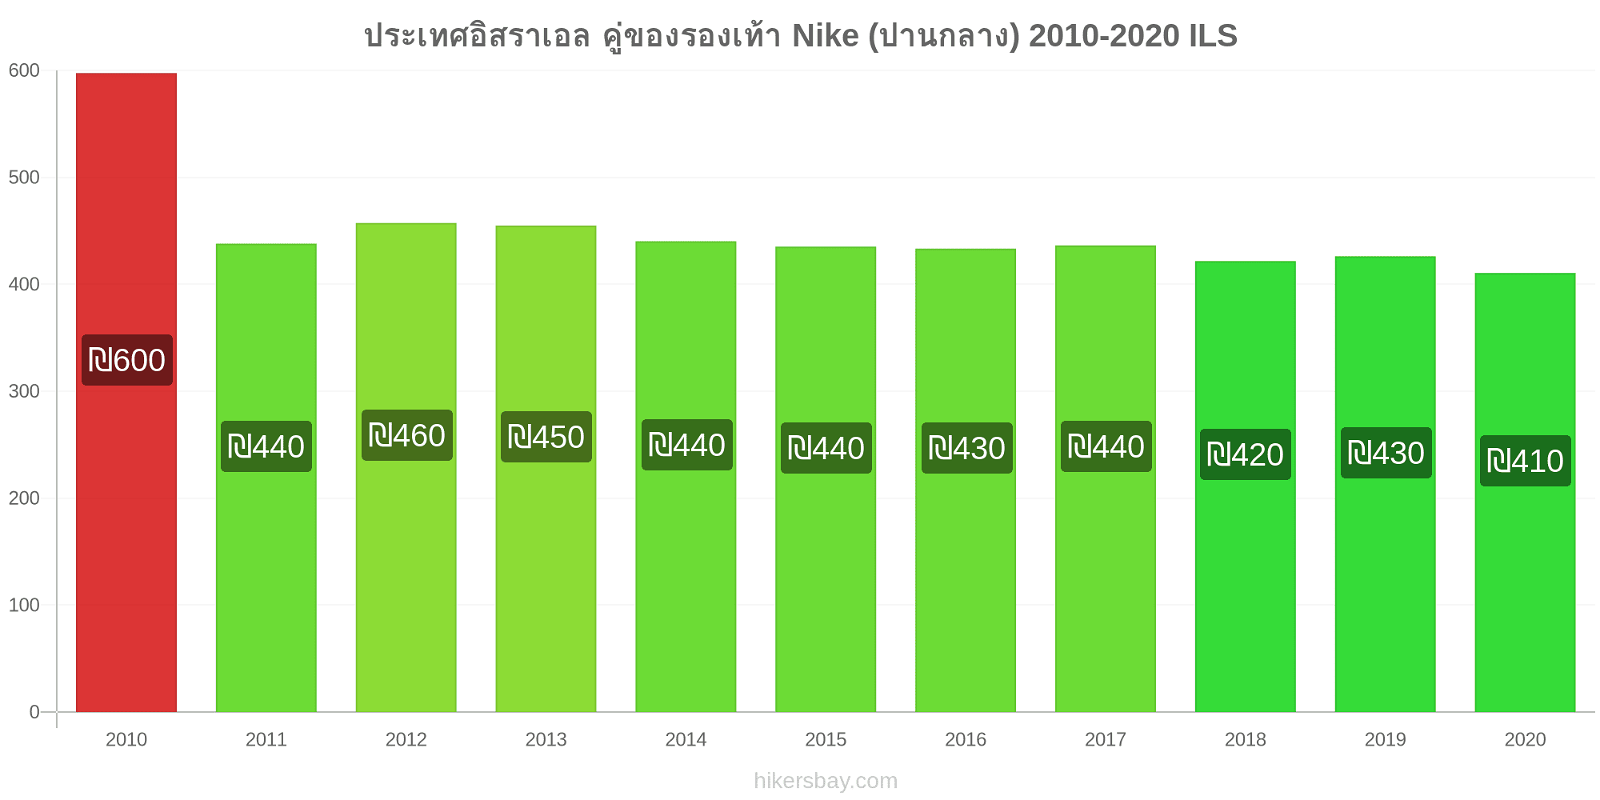 ประเทศอิสราเอล การเปลี่ยนแปลงราคา คู่ของรองเท้า Nike (ปานกลาง) hikersbay.com